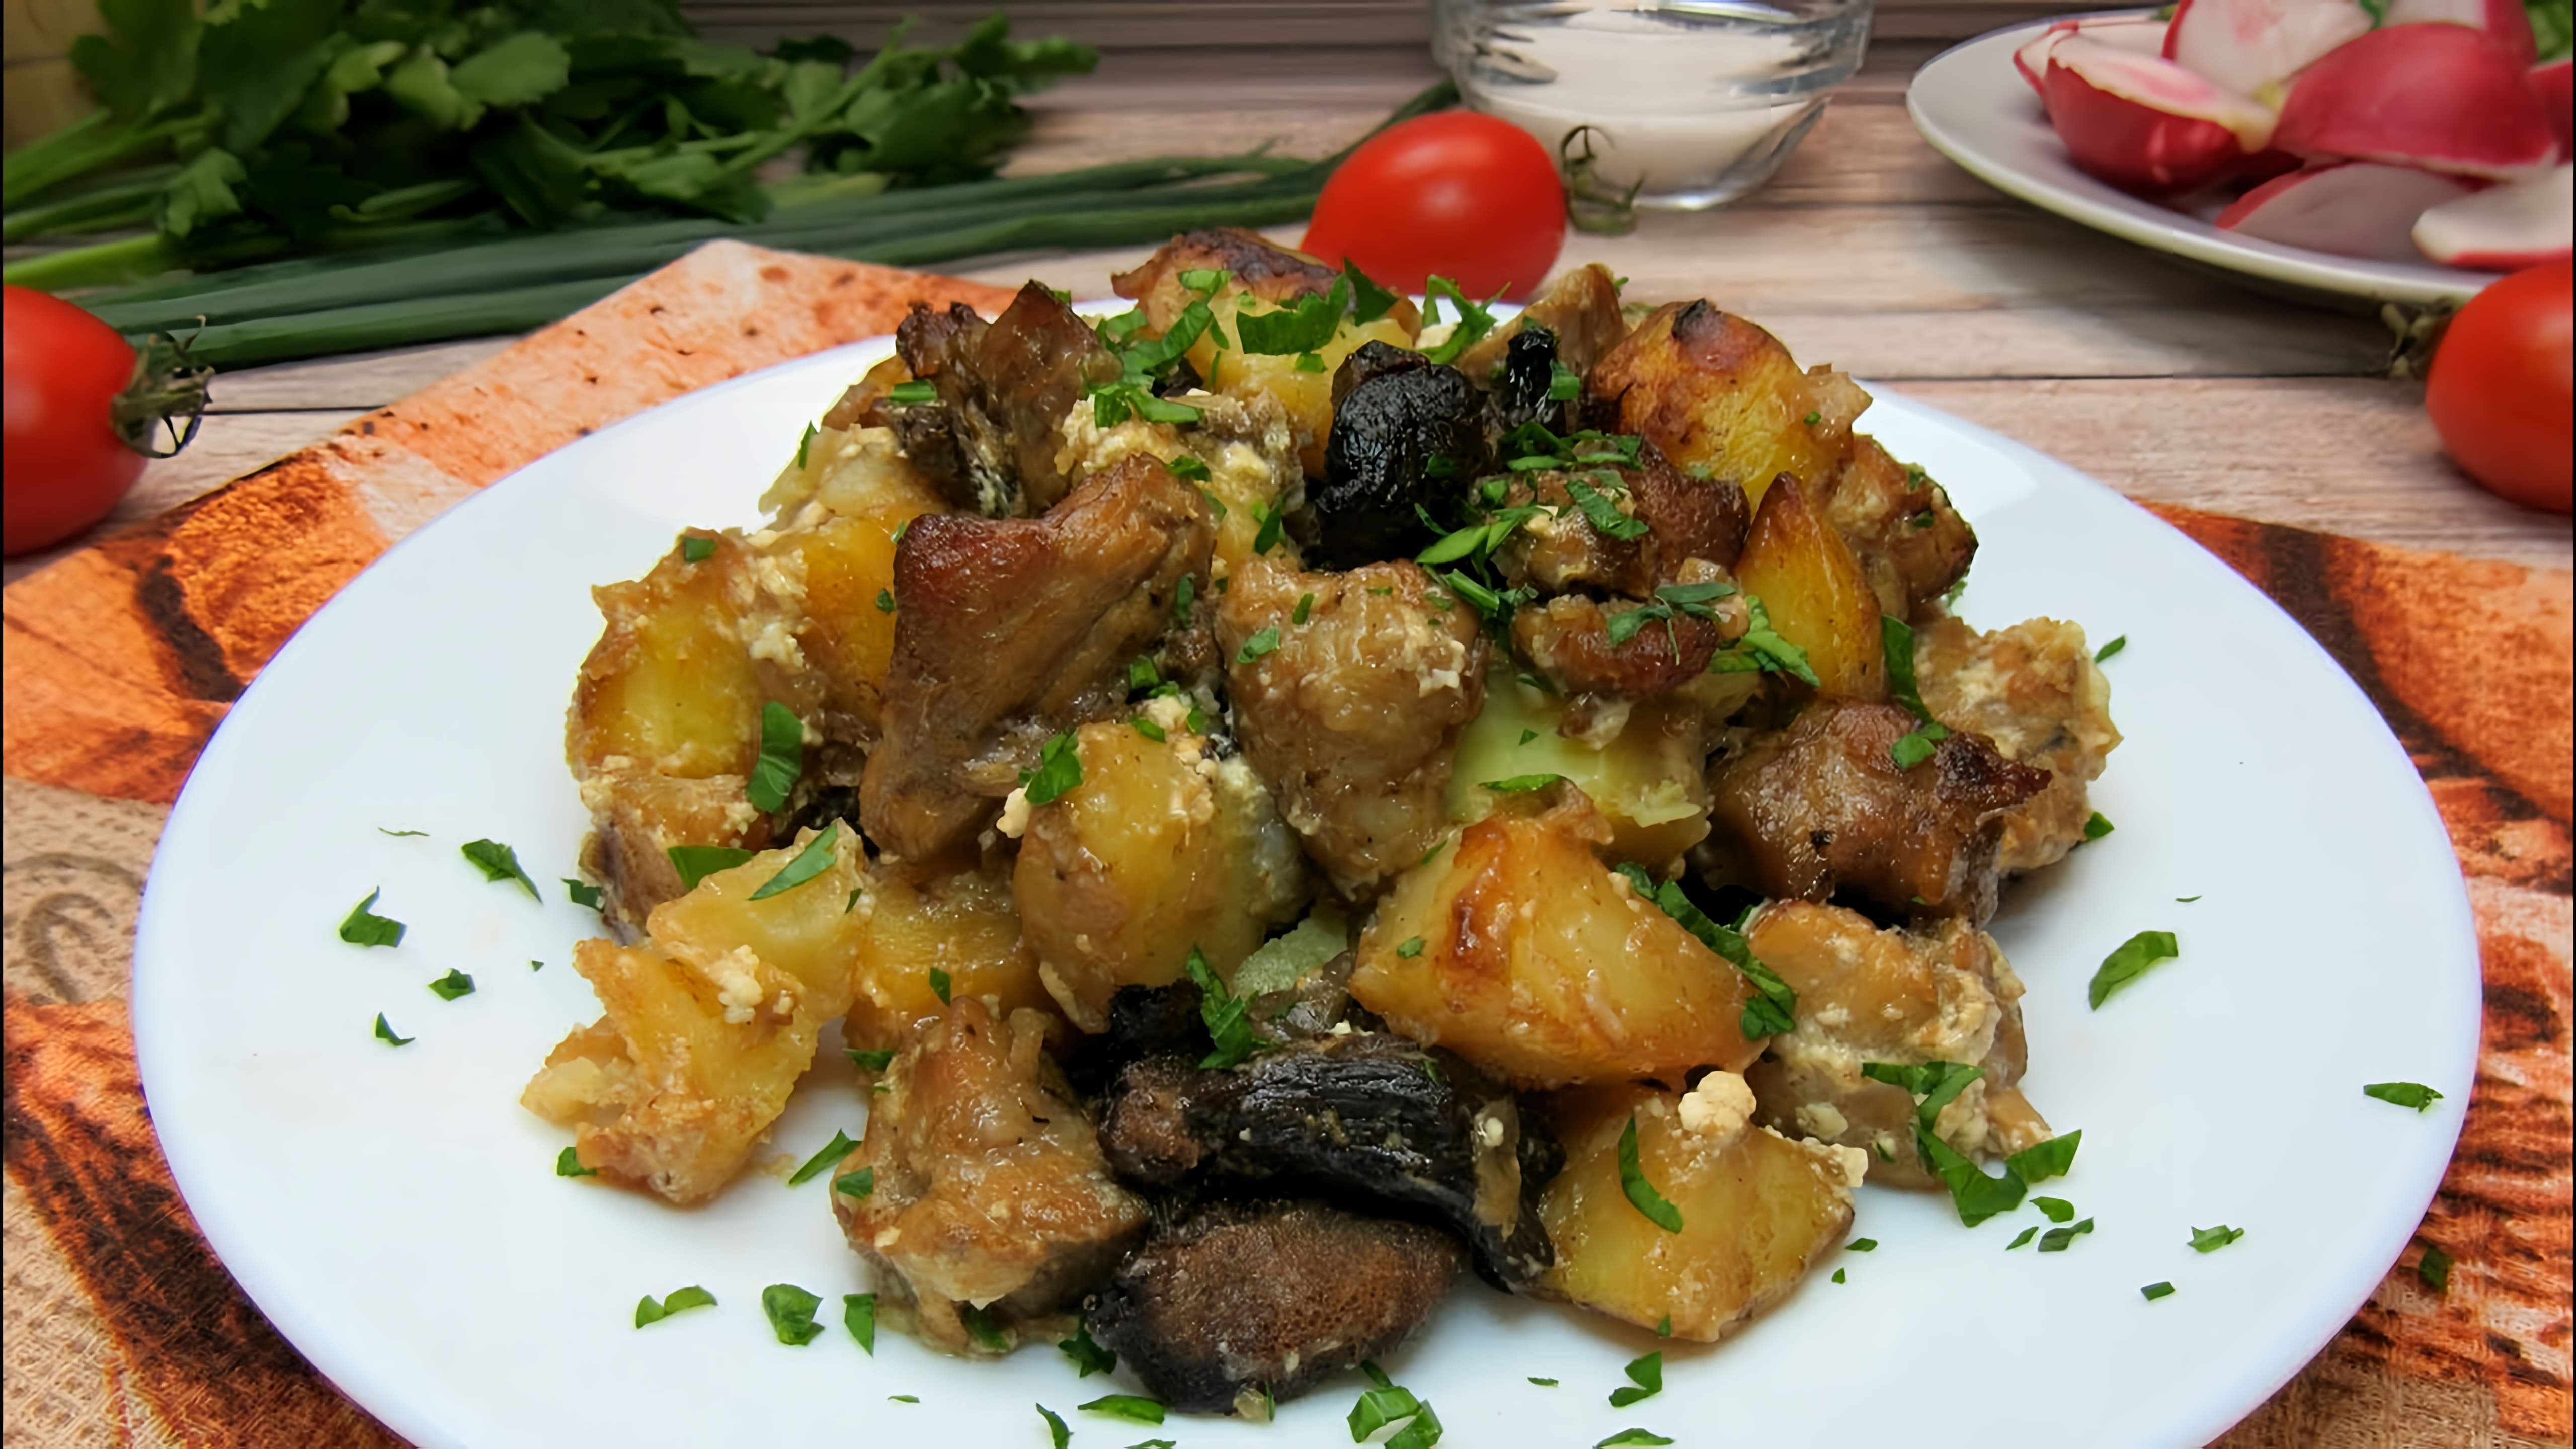 В этом видео демонстрируется процесс приготовления вкусного и сытного блюда - картофеля с мясом и грибами в горшочках